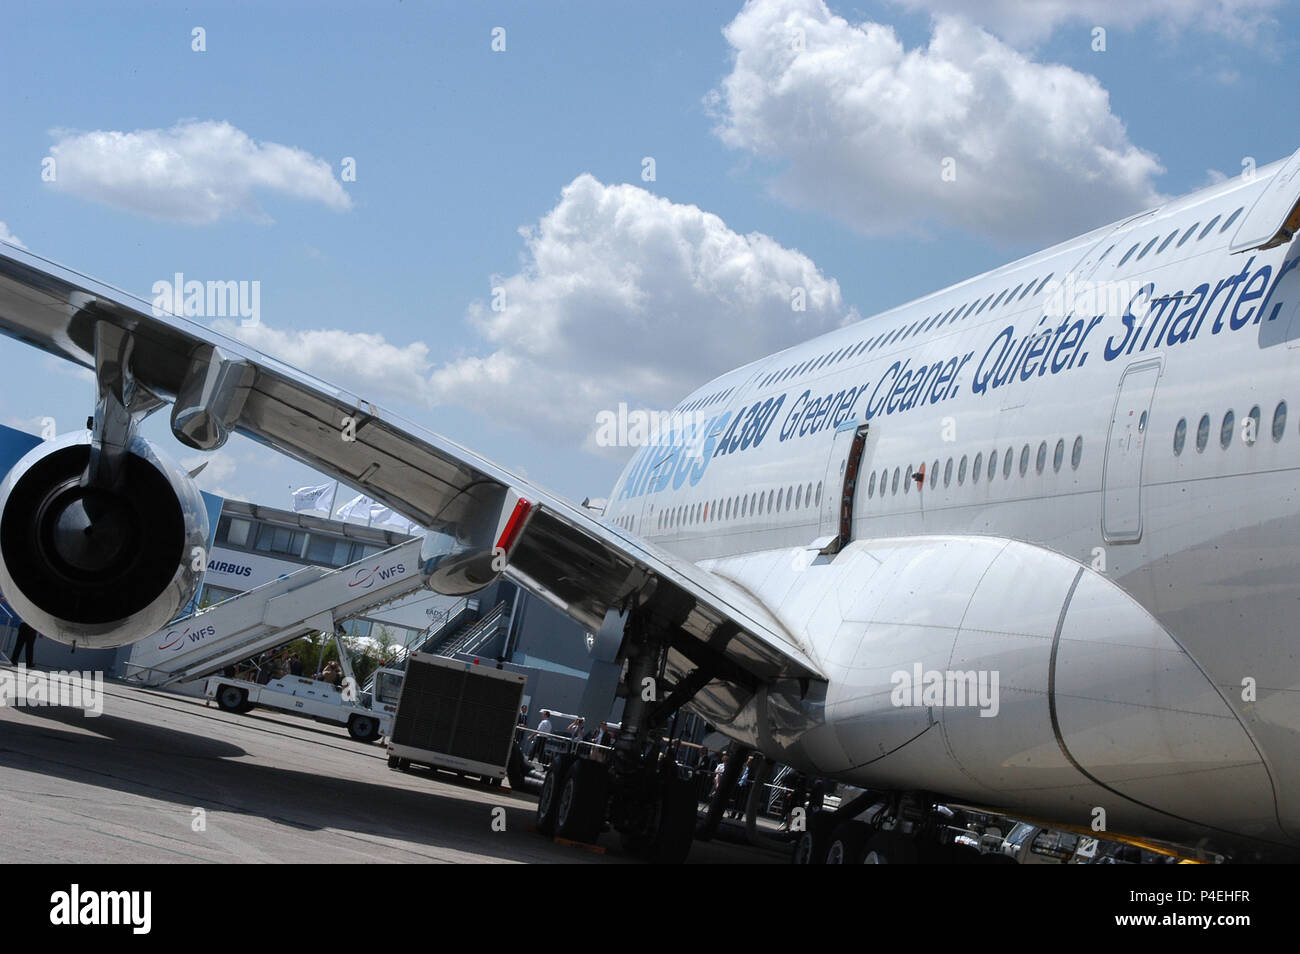 International Air Show Le Bourget - Airbus A380, Airbus Military, EADS, Dassault, alle die besten Flugzeuge auf dem Markt Stockfoto